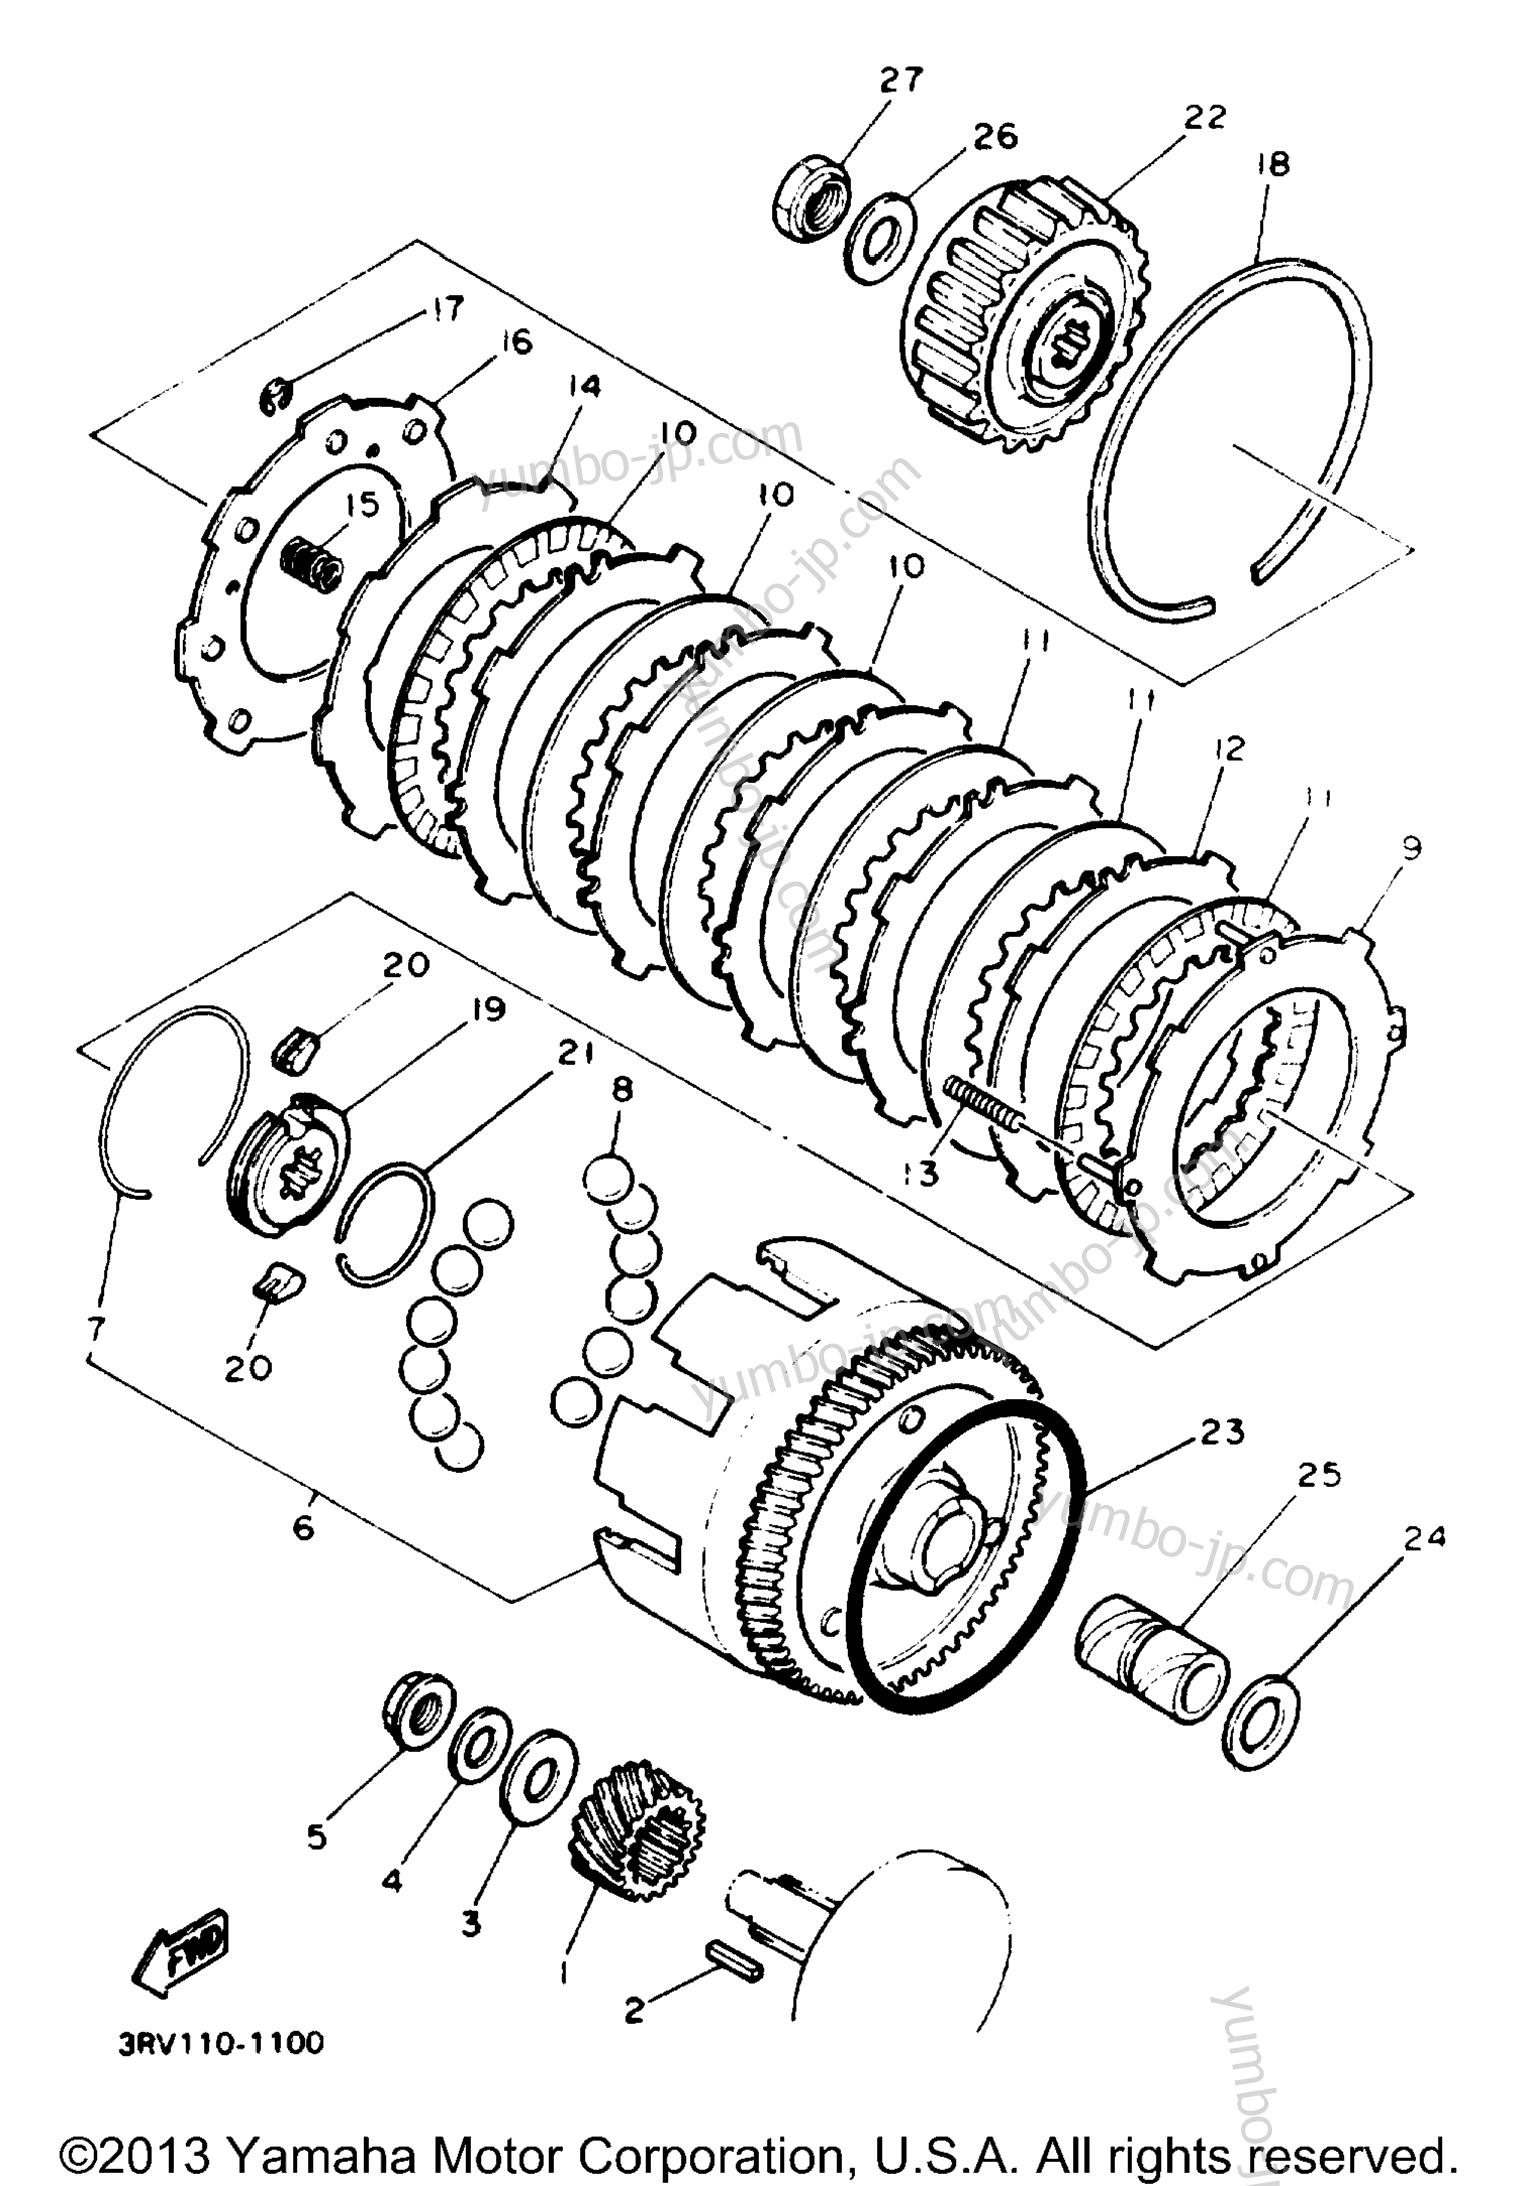 Устройство сцепления для мотоциклов YAMAHA Y-ZINGER (PW80E) 1993 г.